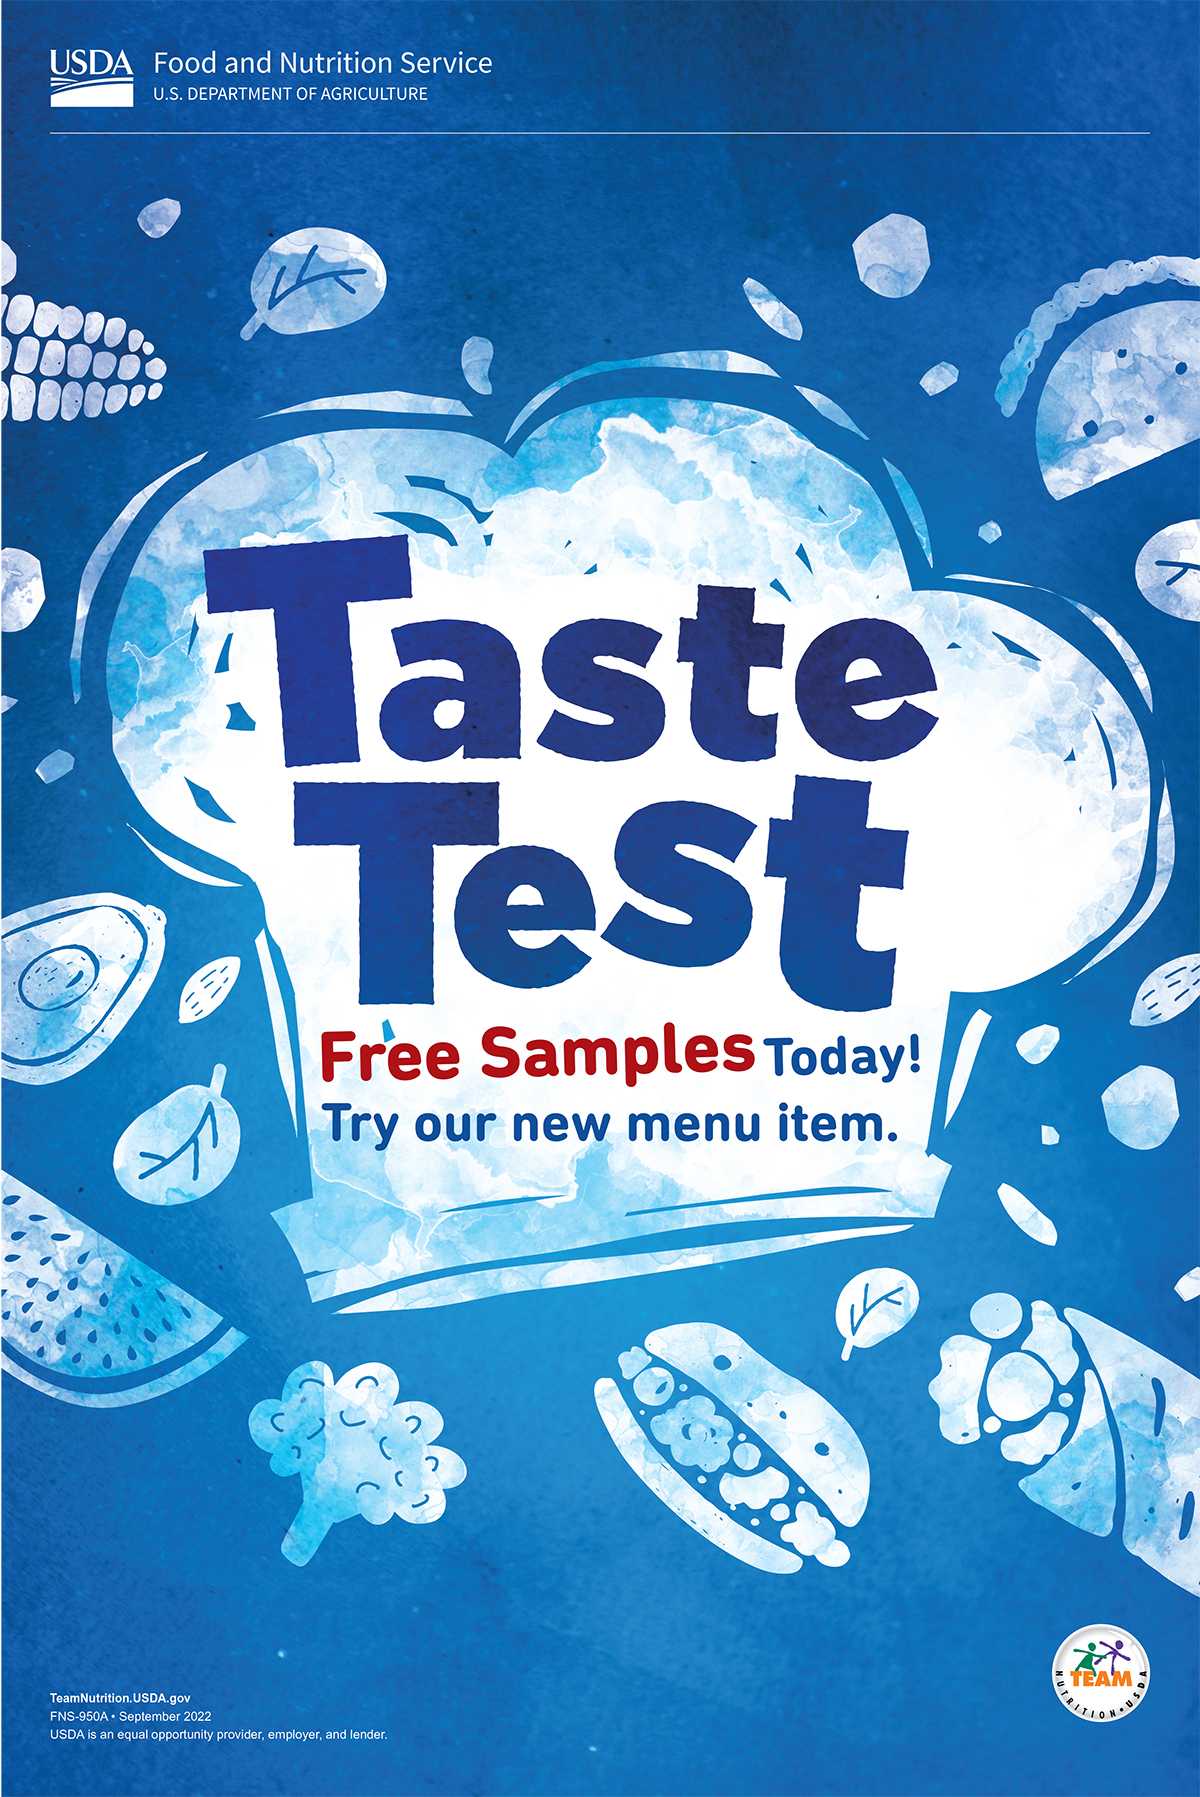 Taste test free samples